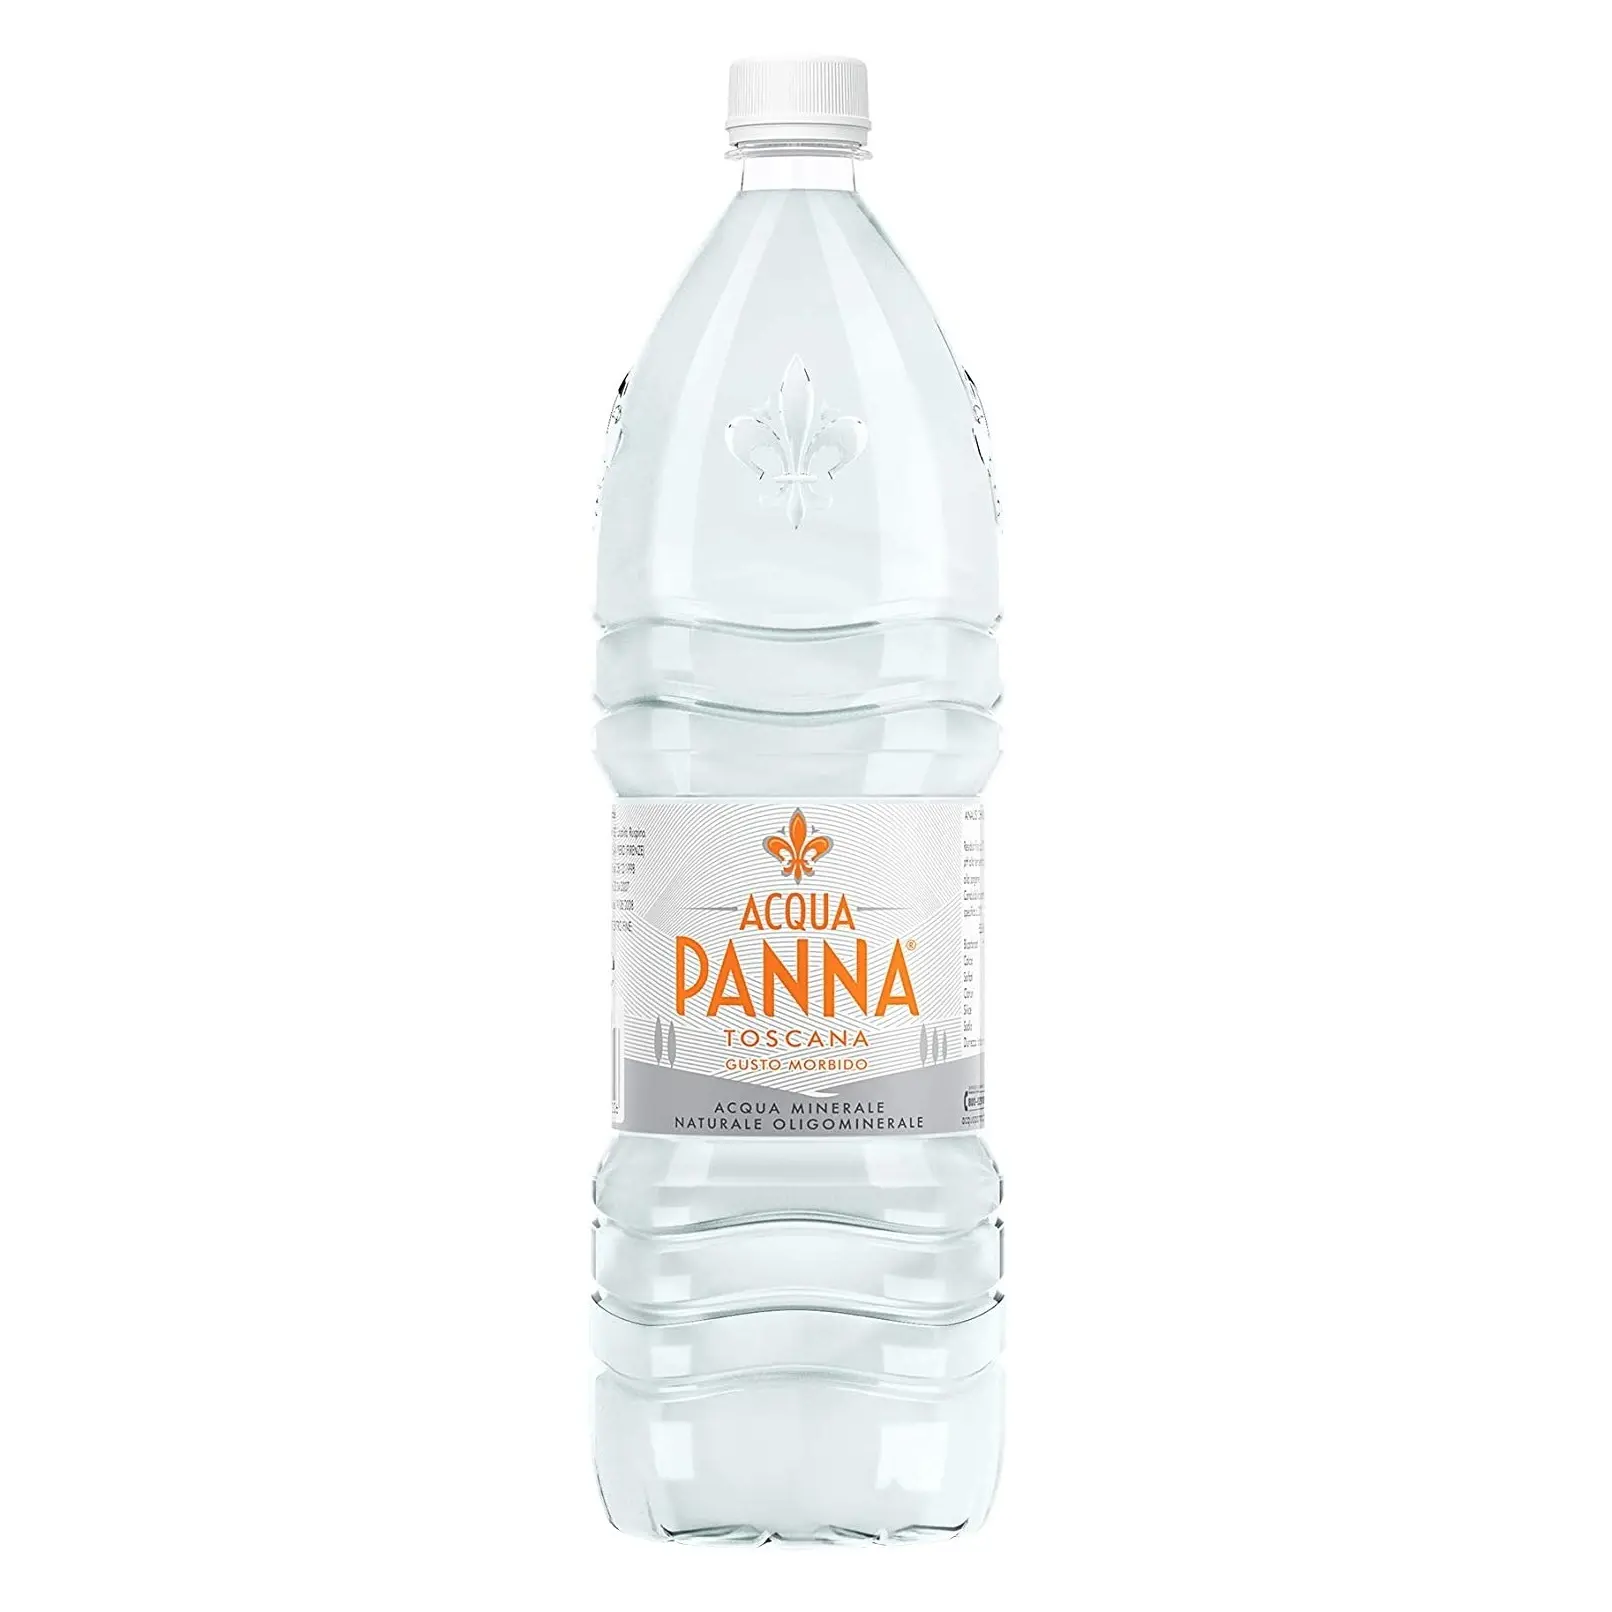 Acqua Panna Natural родниковая вода в стеклянной бутылке 250 мл/8,45 Fl.oz-чехол 24